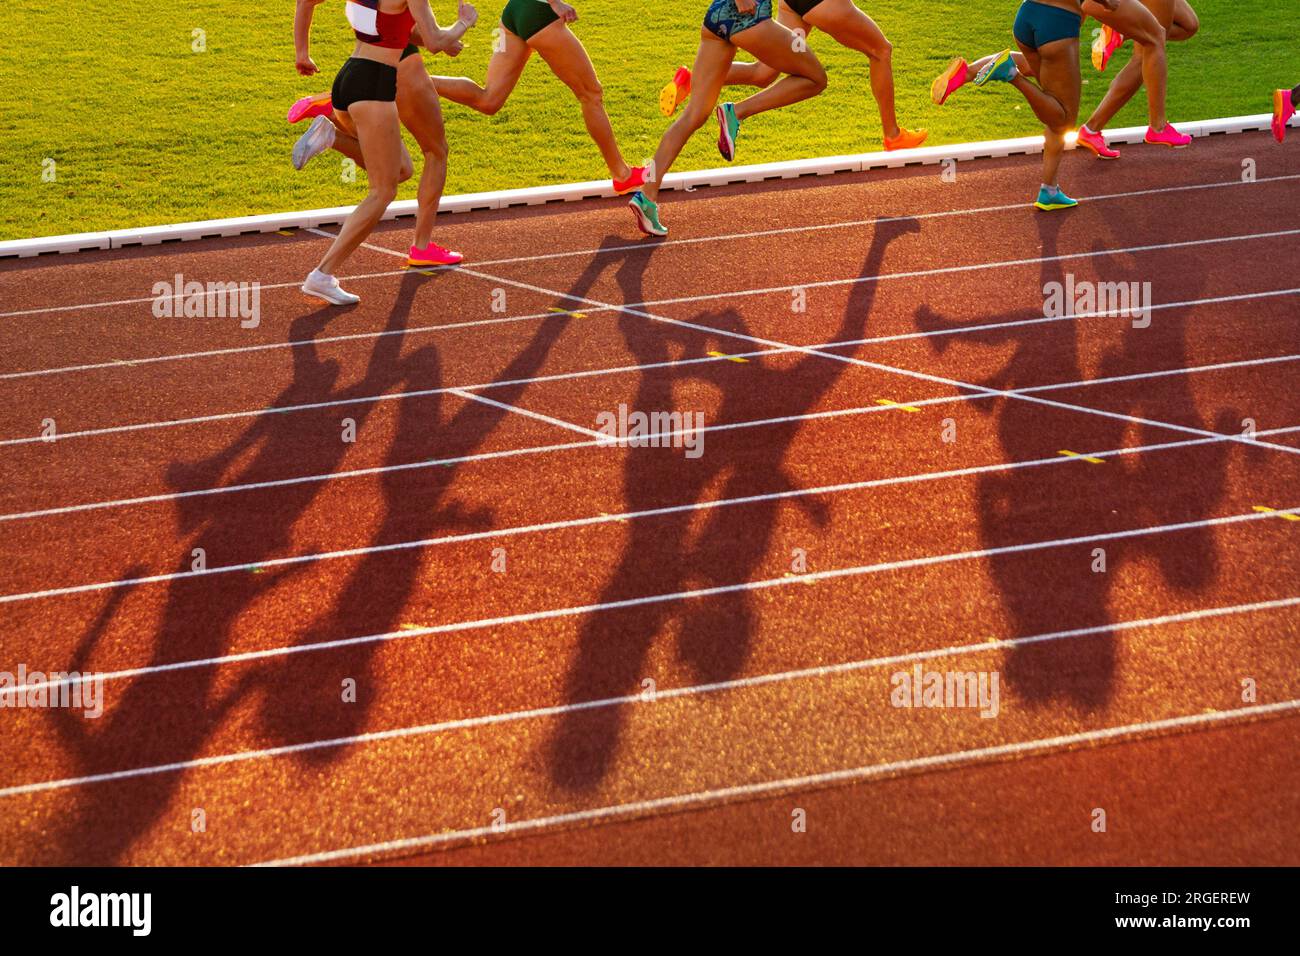 Mittelstreckenrennen während der Leichtathletik-Veranstaltung, Sportlerinnen auf der Leichtathletik-Rennstrecke bei Sonnenuntergang. Beine von Sportlern, roter Bearbeitungsbereich. Sportfoto f Stockfoto